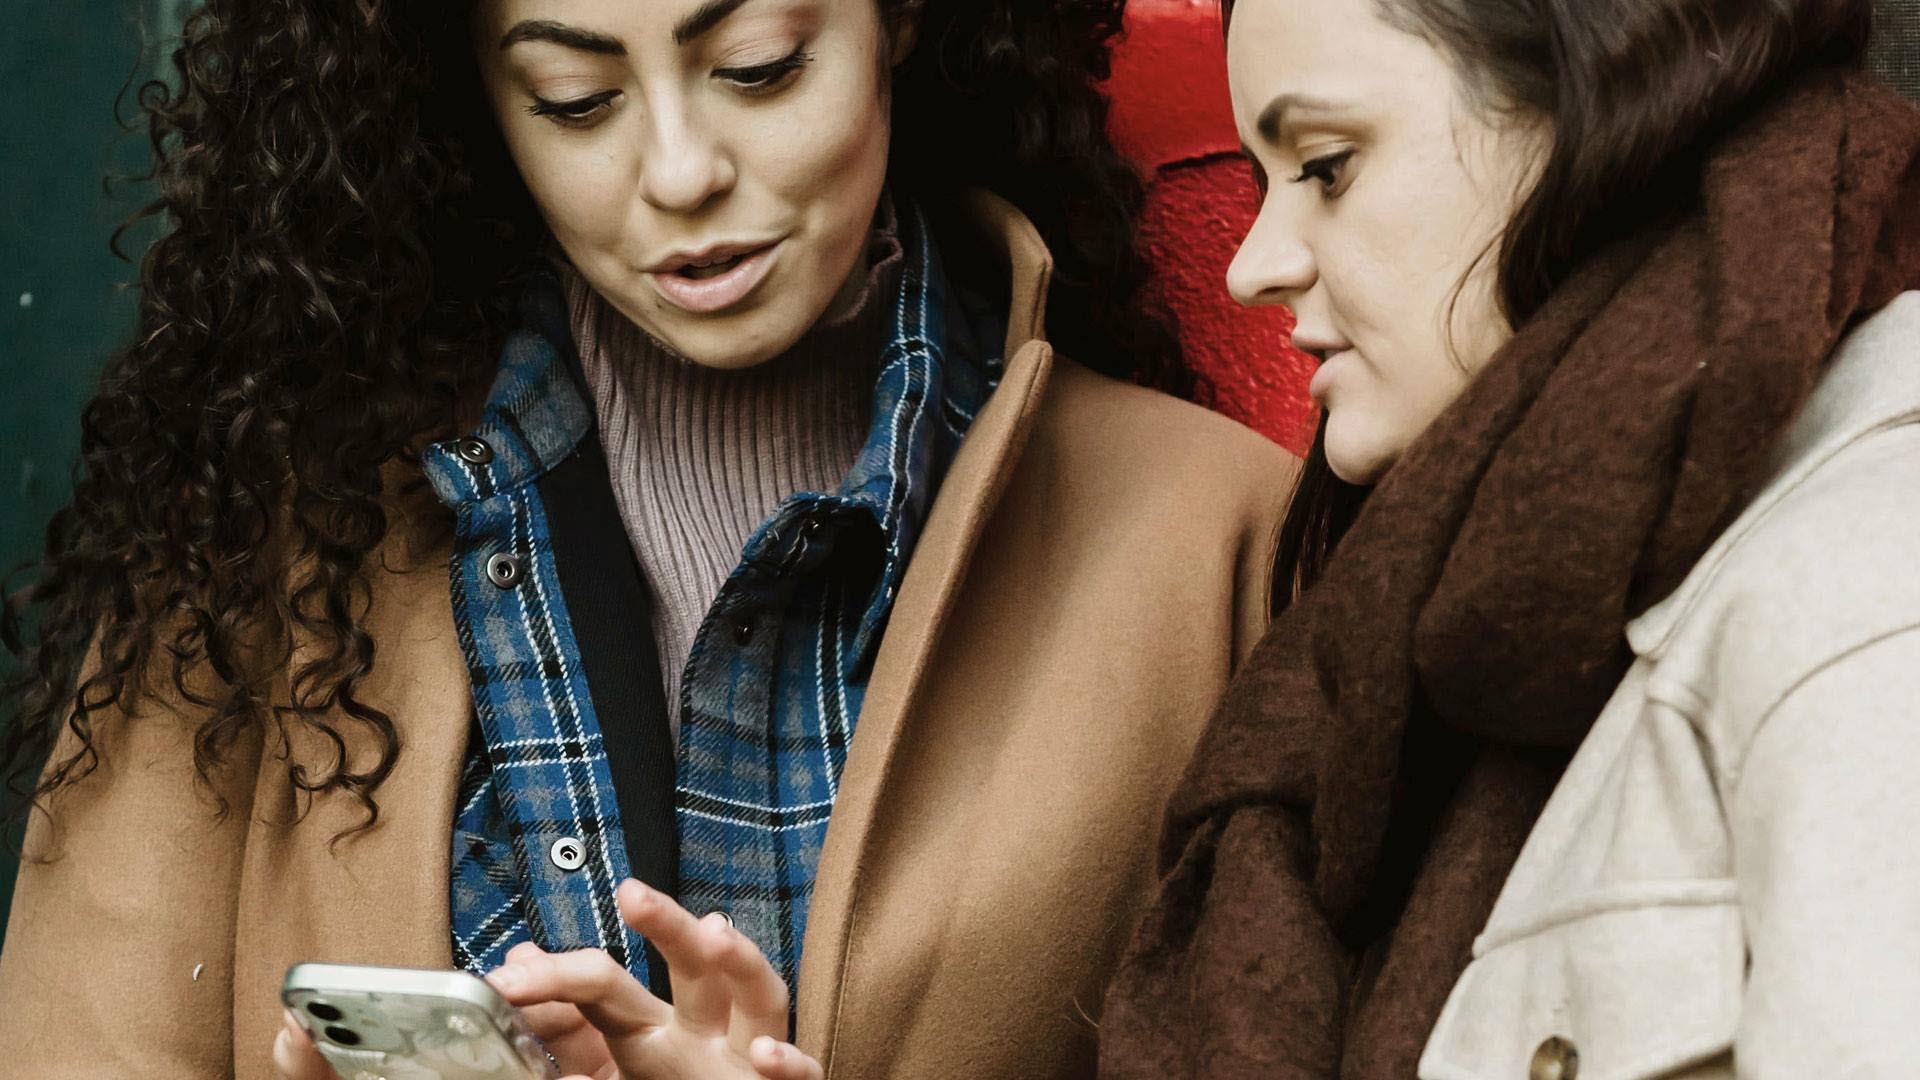 Två kvinnor i 30-40 årsåldern tittar på en mobil och diskuterar något. Dden ena kvinnan har mört lockigt hår och den andra har rakt mörkt hår